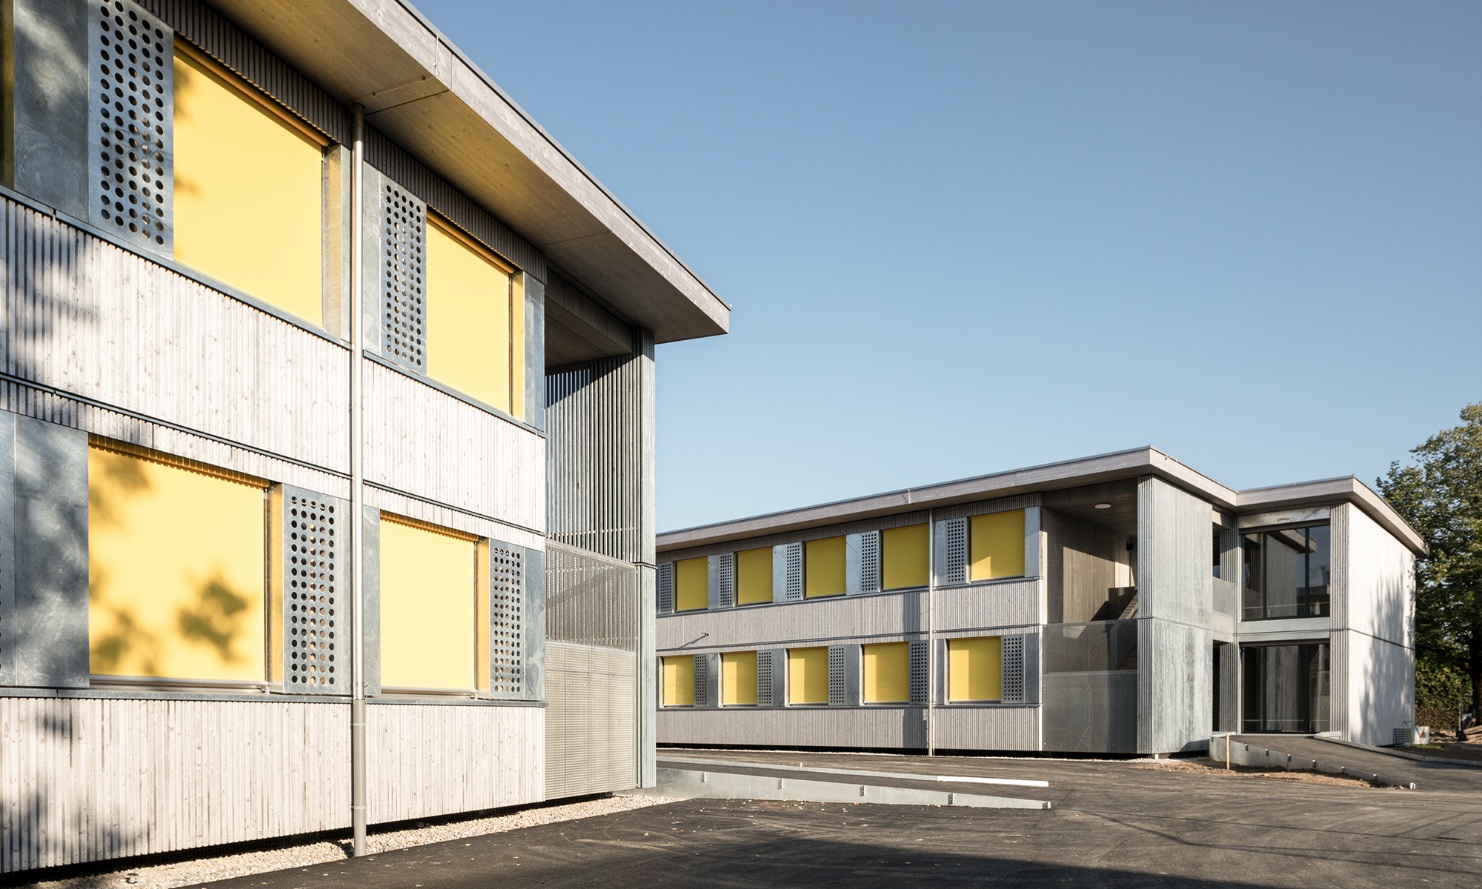 Pavillons scolaire de deux étages avec façades en bois et stores jaunes